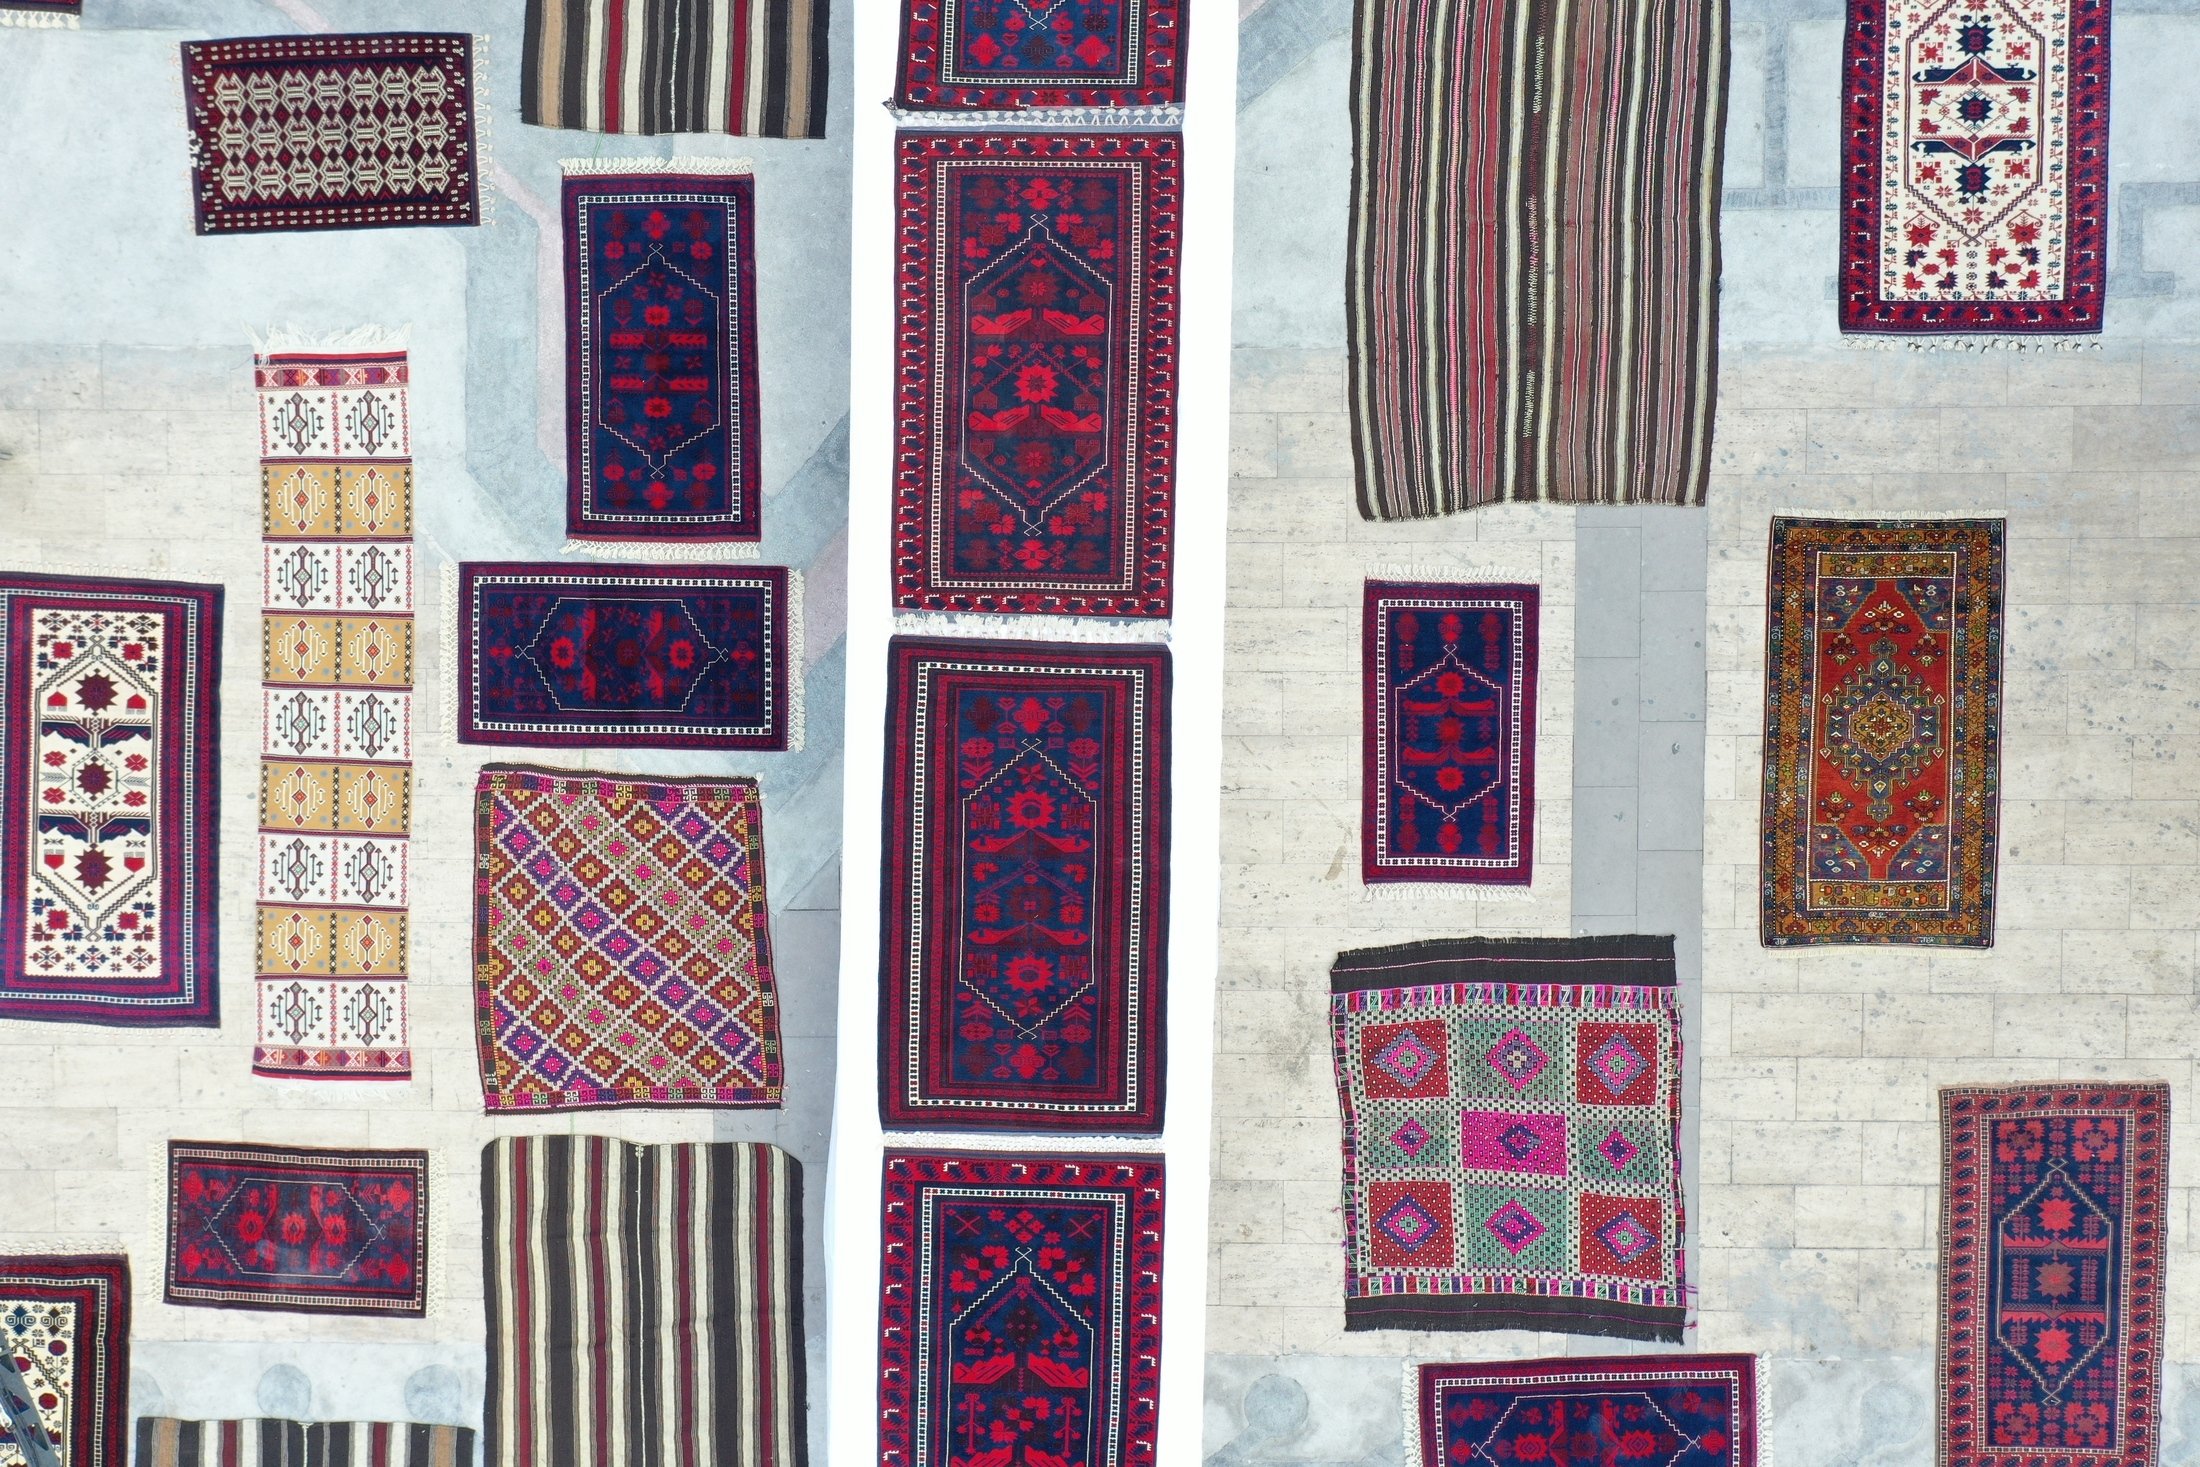 Yağcıbedir carpets are on display, in Balıkesir, Türkiye, Sept. 4, 2022. (AA Photo)